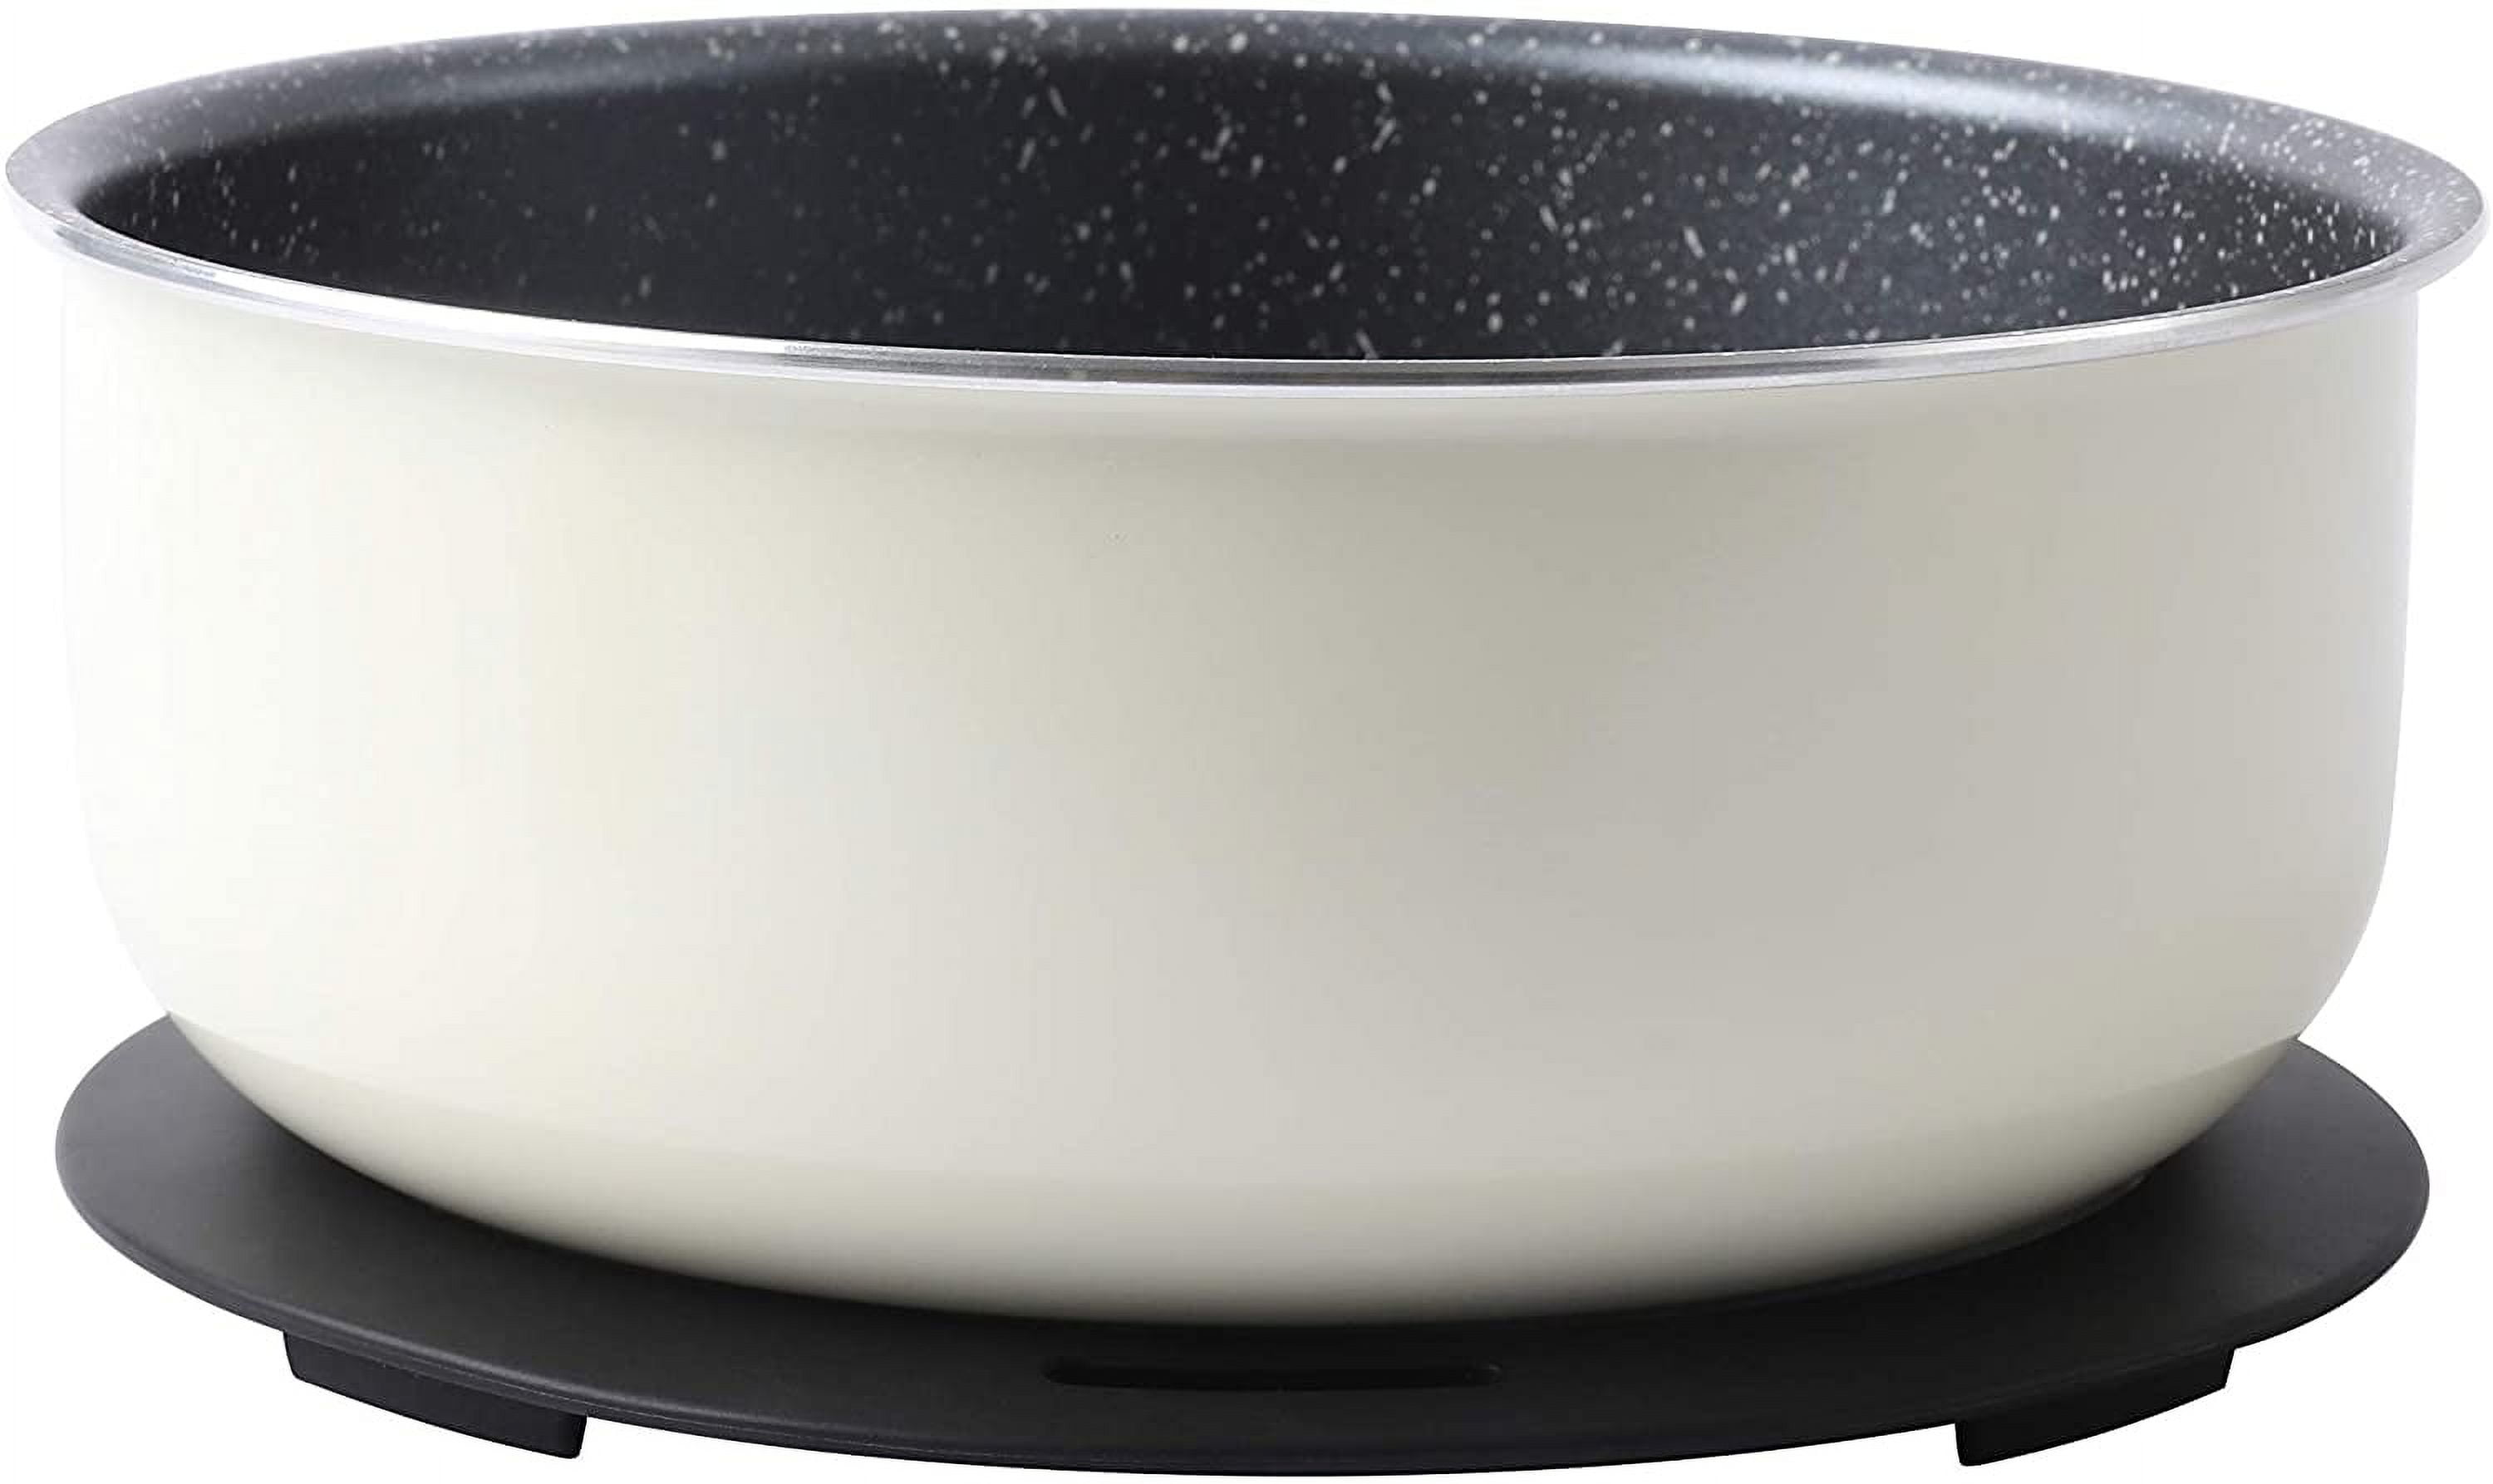 Motase 12pcs Pots and Pans Set, Nonstick Cookware Sets Detachable Handle,  Induction Kitchen Cookware Set Non Stick with Removable Handle, RV Cookware